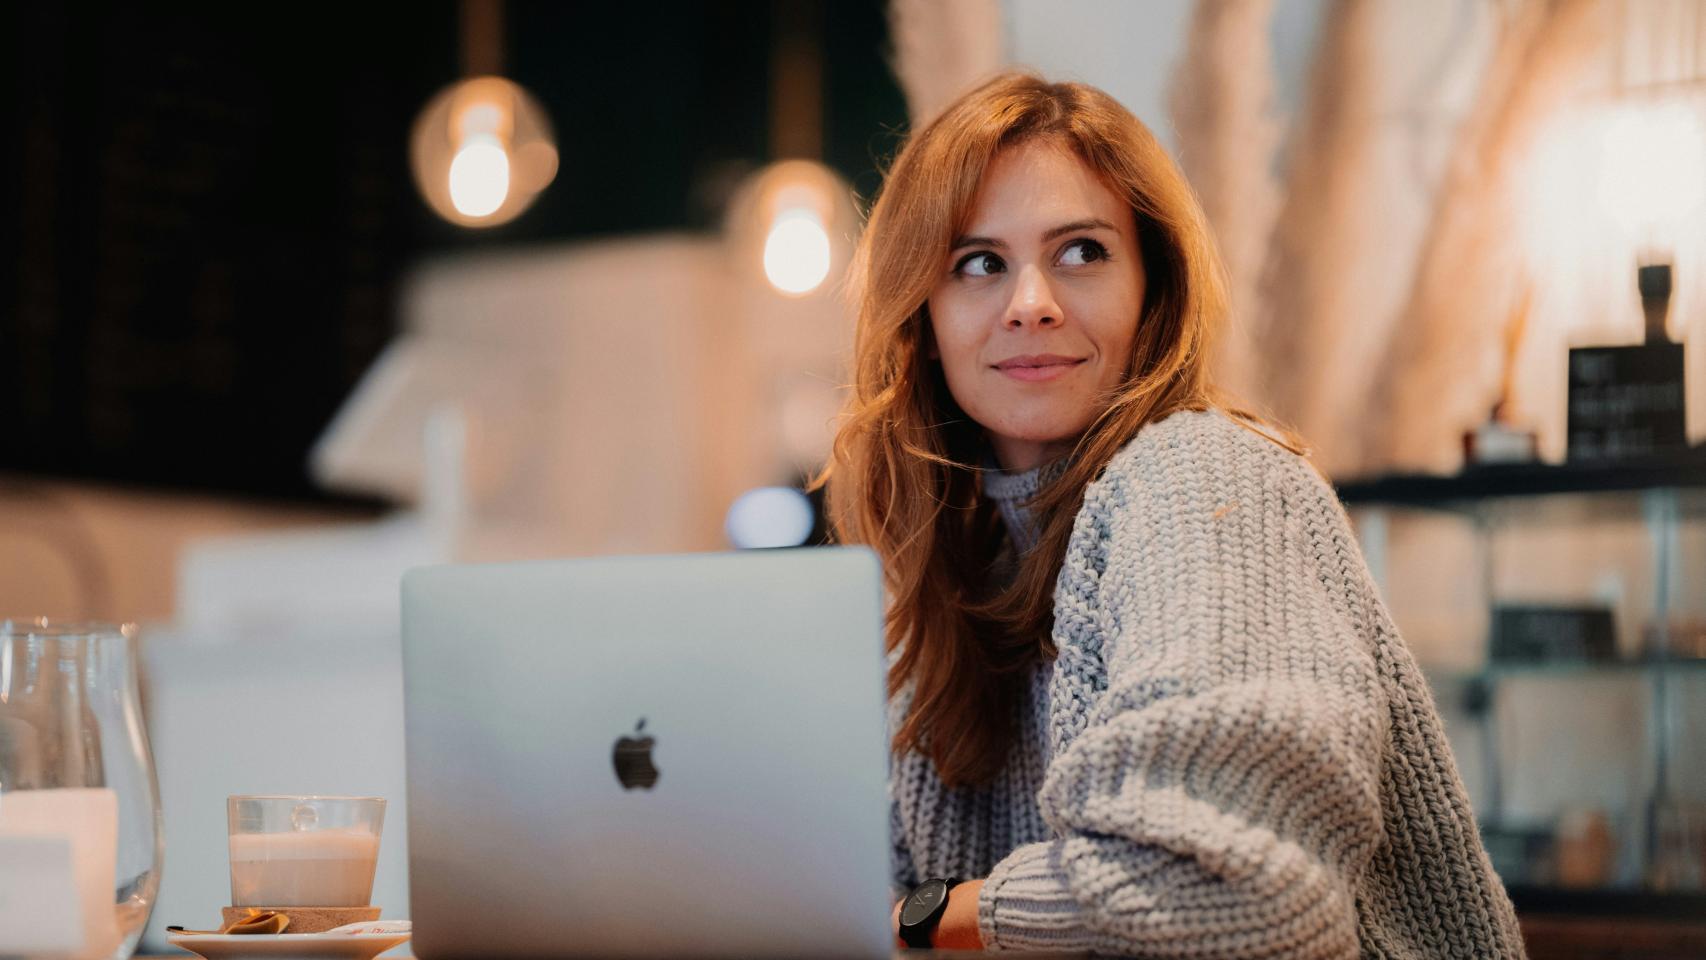 Mujer mirando de reojo con un portátil y un café.